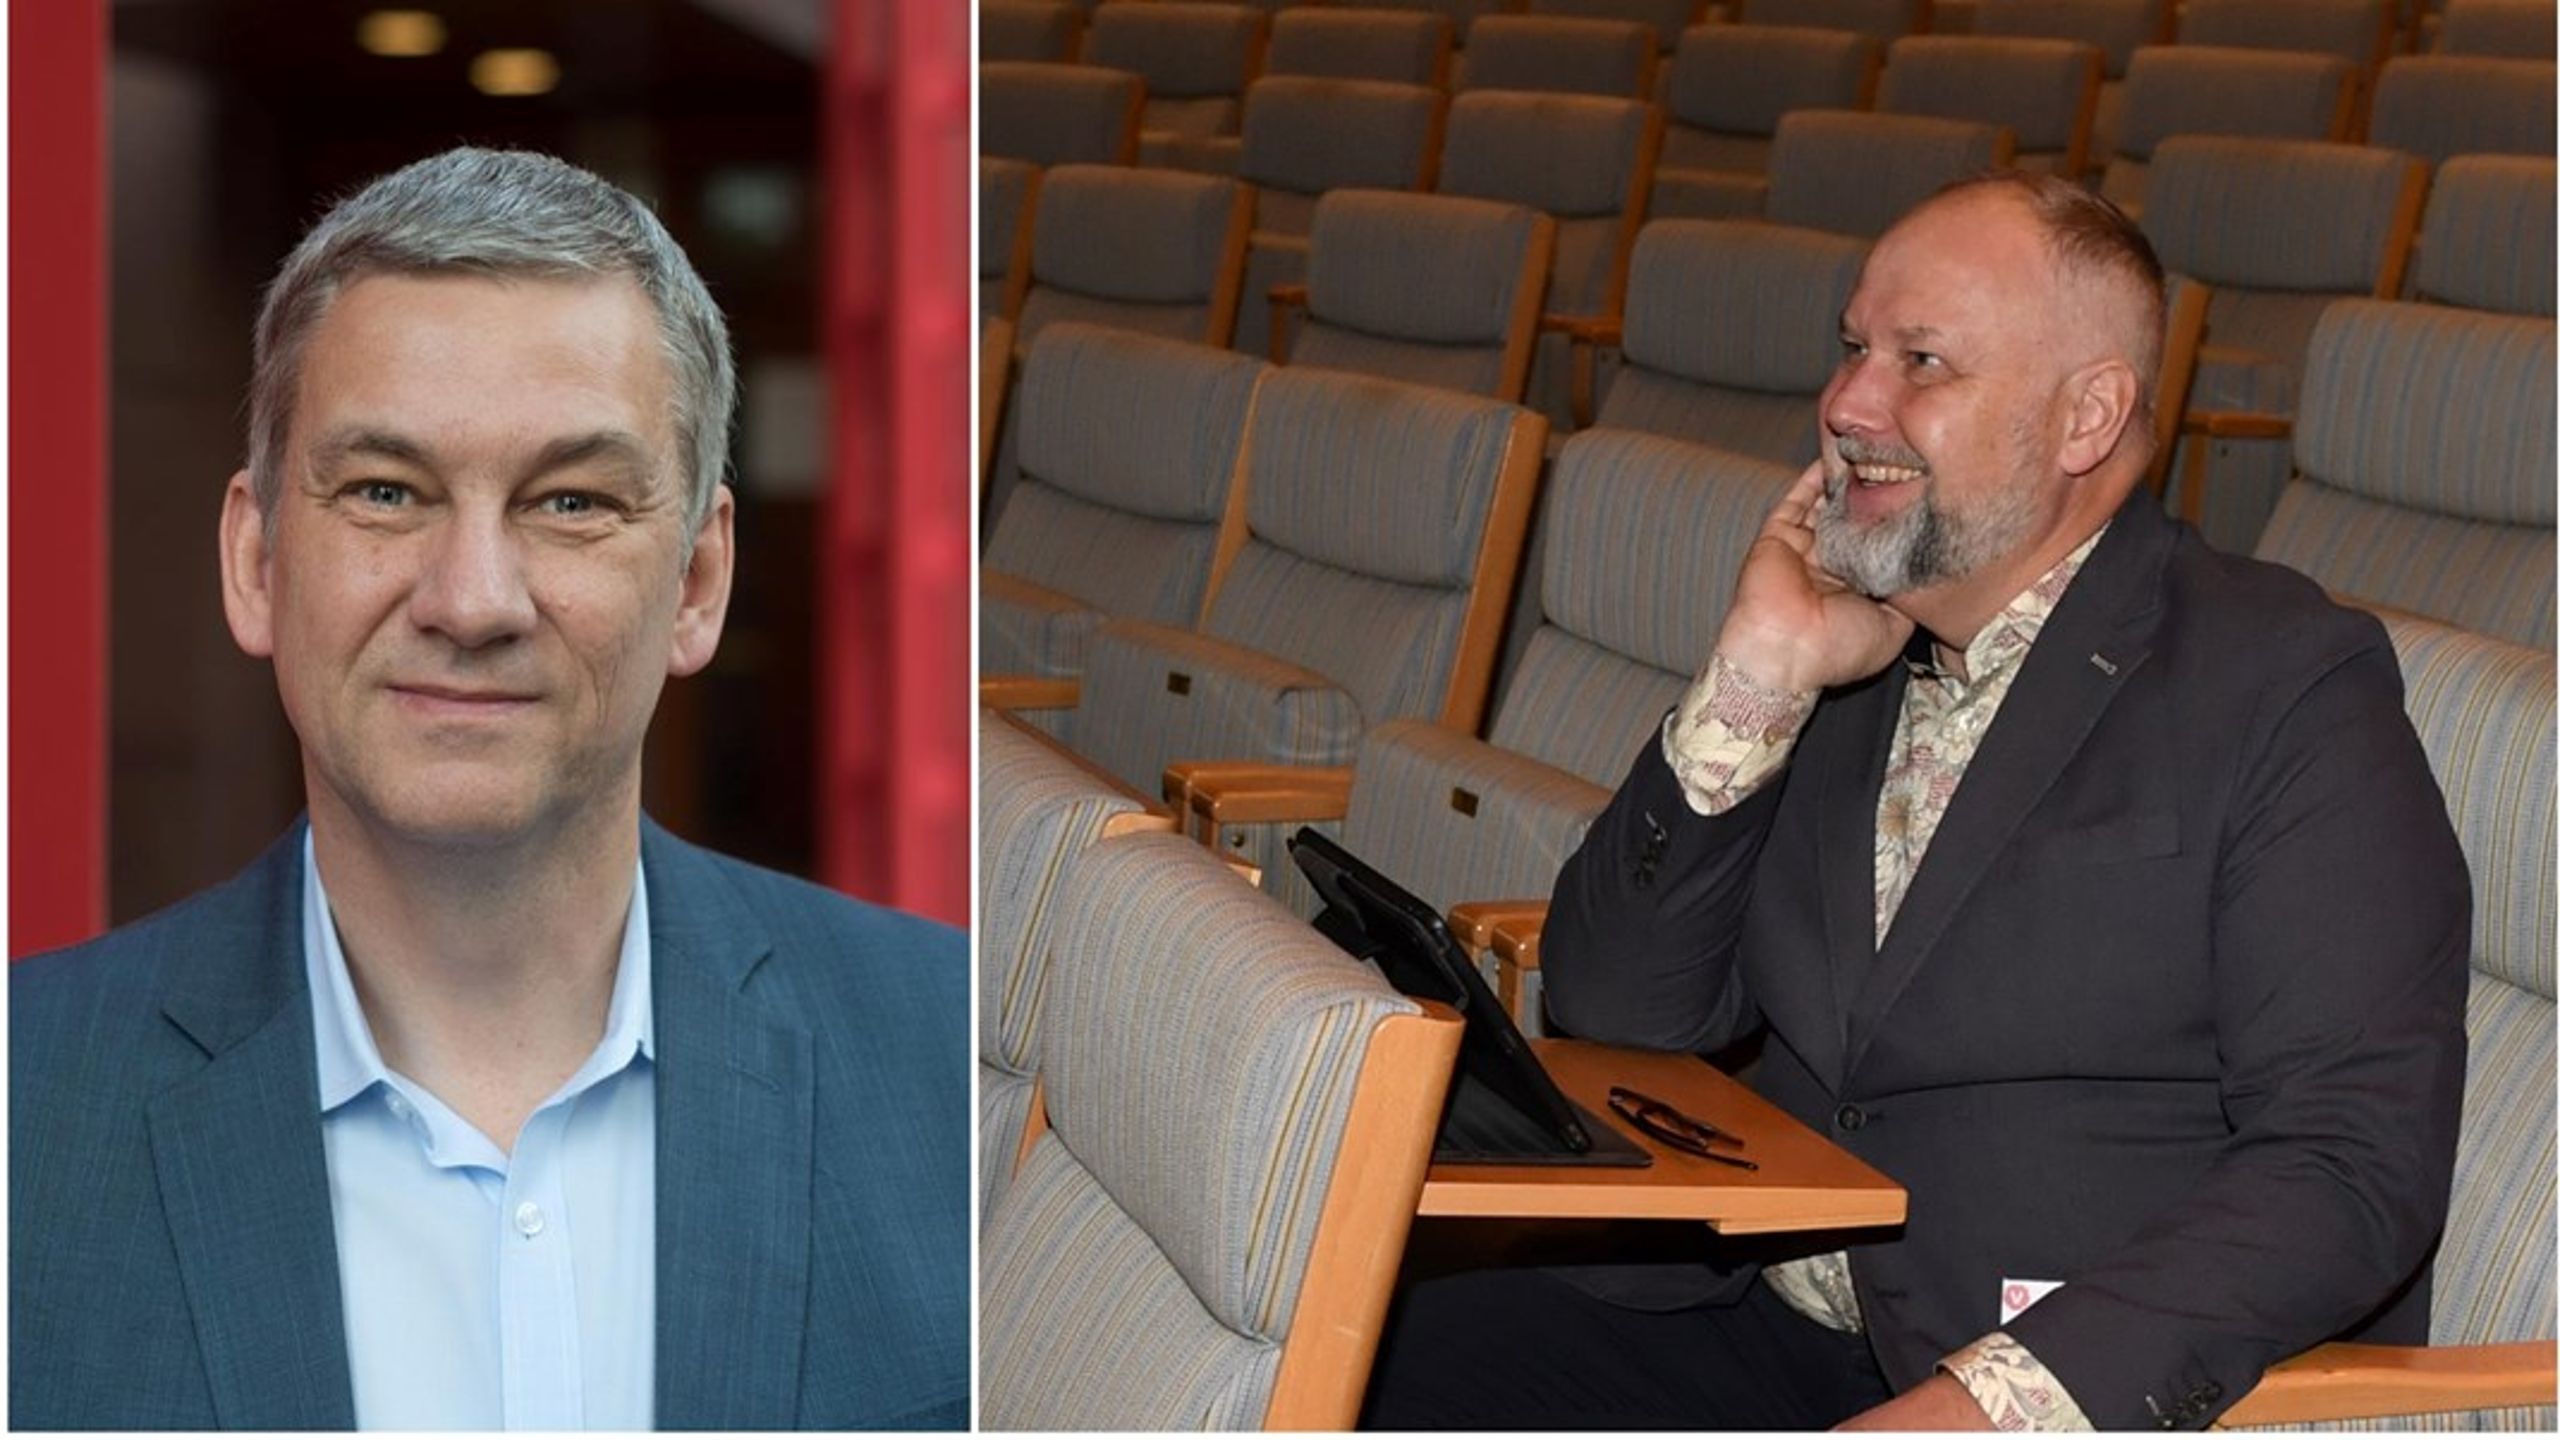 Förändringarna i den europapolitiska landskapet är underrapporterade i svenska medier, skriver Mats Engström. På bilden till höger är Jonas Sjöstedt som ställer upp för Vänsterpartiet i EU-valet.